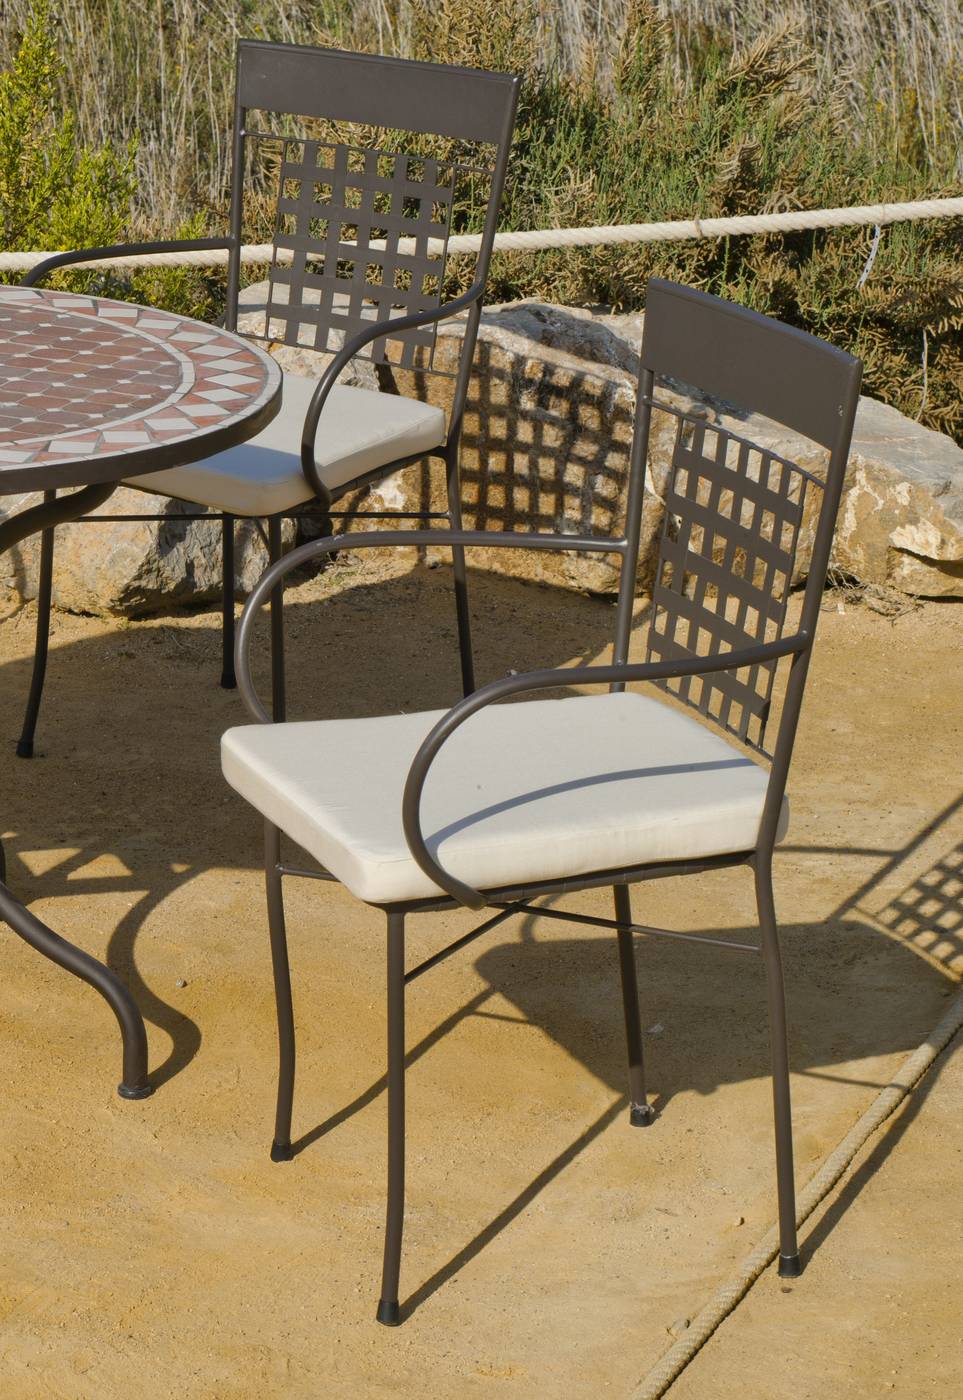 Set Mosaico Adriana/Vigo-150 - Conjunto para terraza o jardín de forja: 1 mesa + 4 sillones + 4 cojines. Mesa válida para 6 sillones.